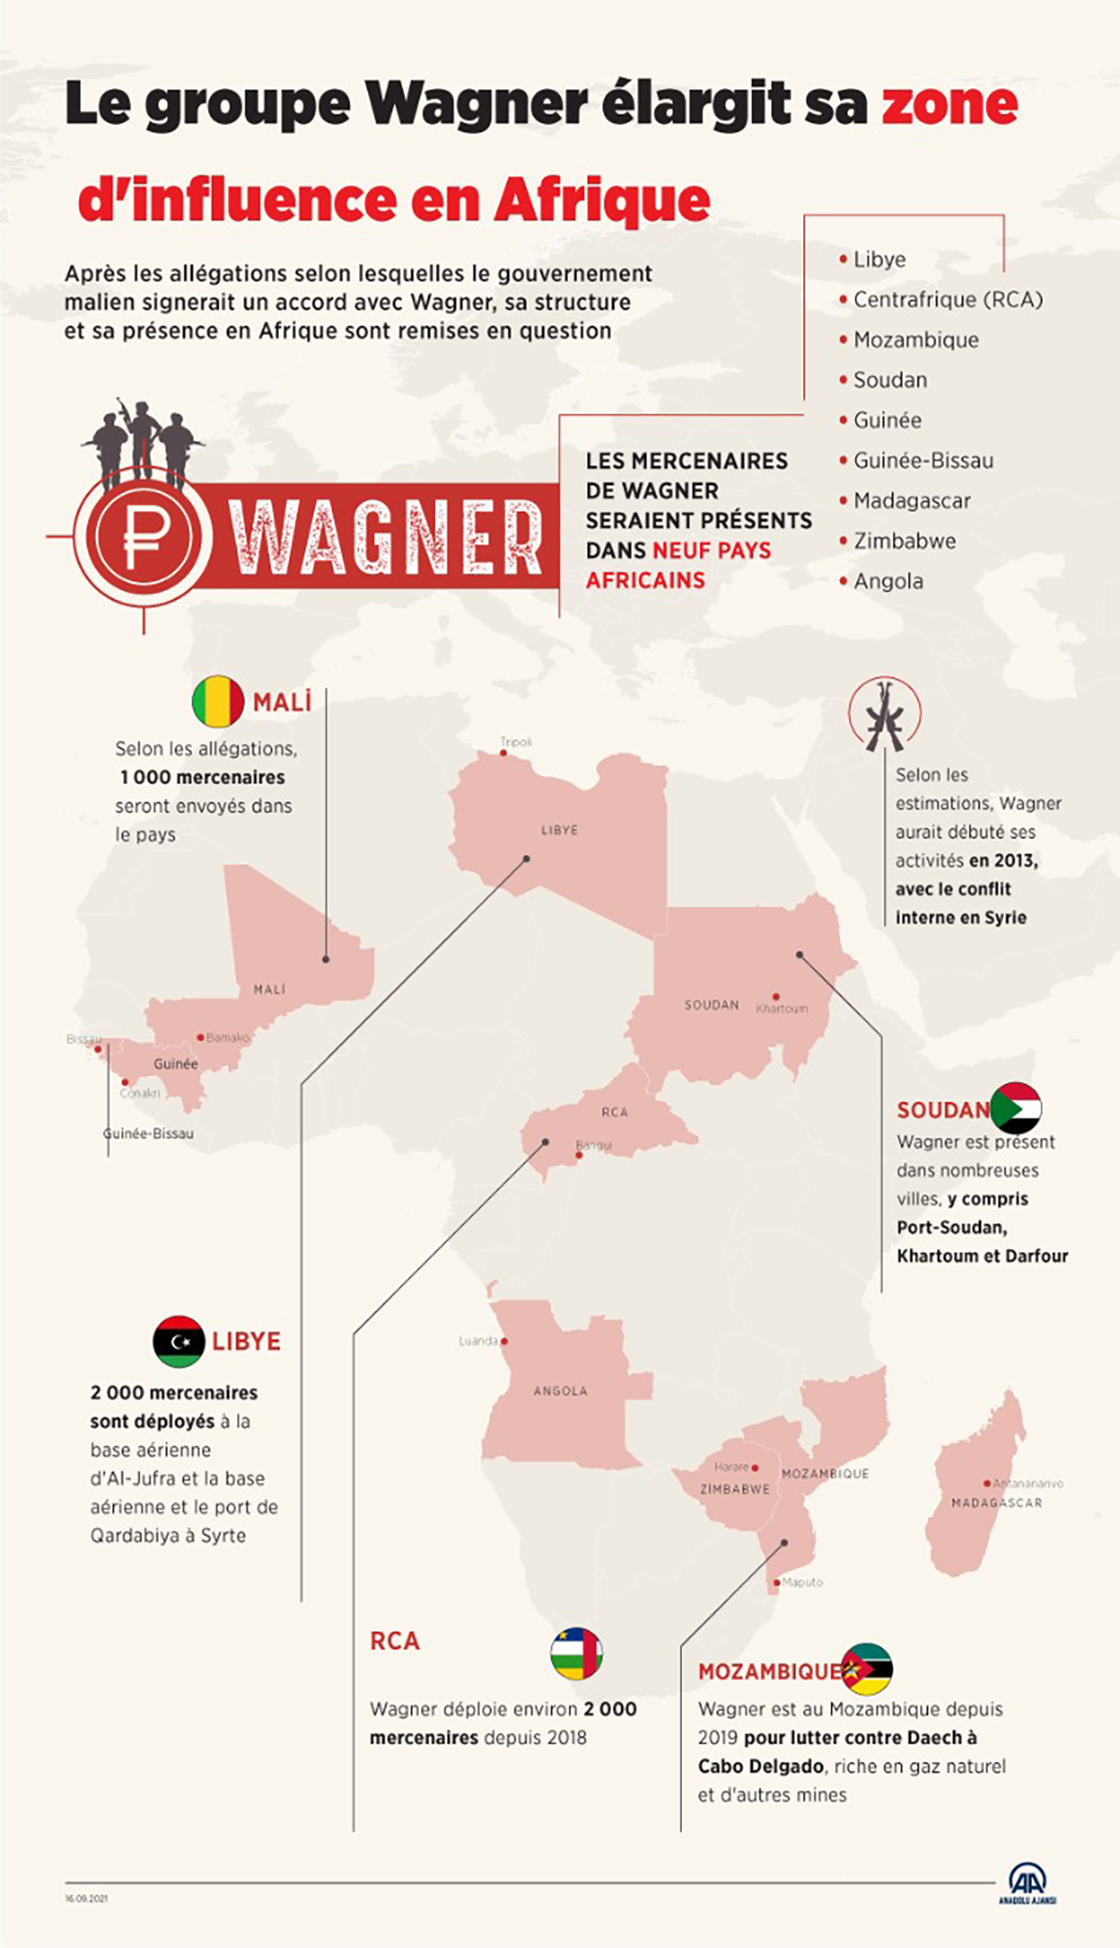 Le groupe russe Wagner élargit sa zone d'influence en Afrique 